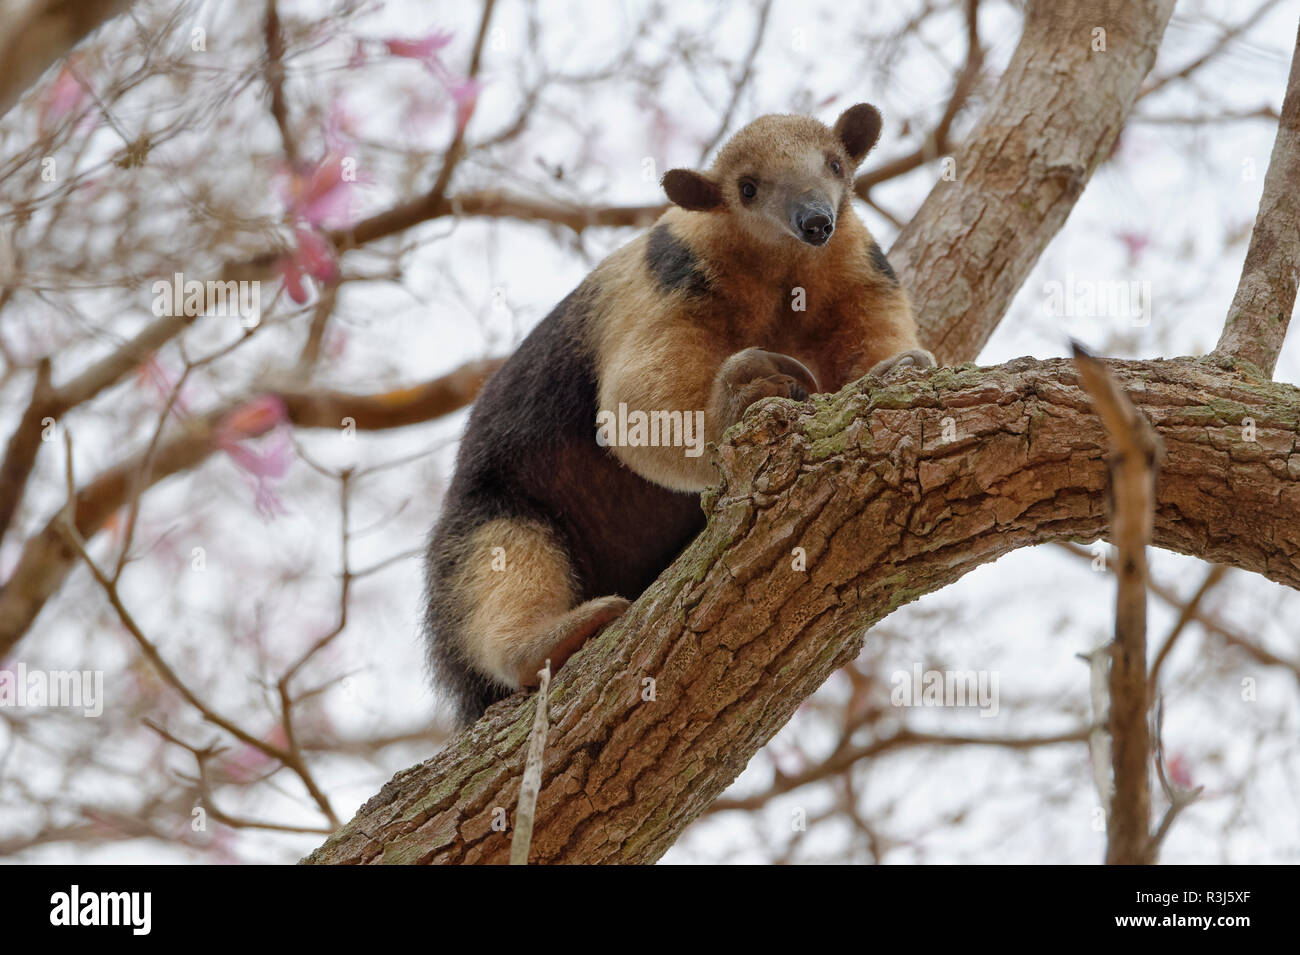 El oso melero (Tamandua tetradactyla) subirse a un árbol, el Pantanal de Mato Grosso, Mato Grosso, Brasil Foto de stock